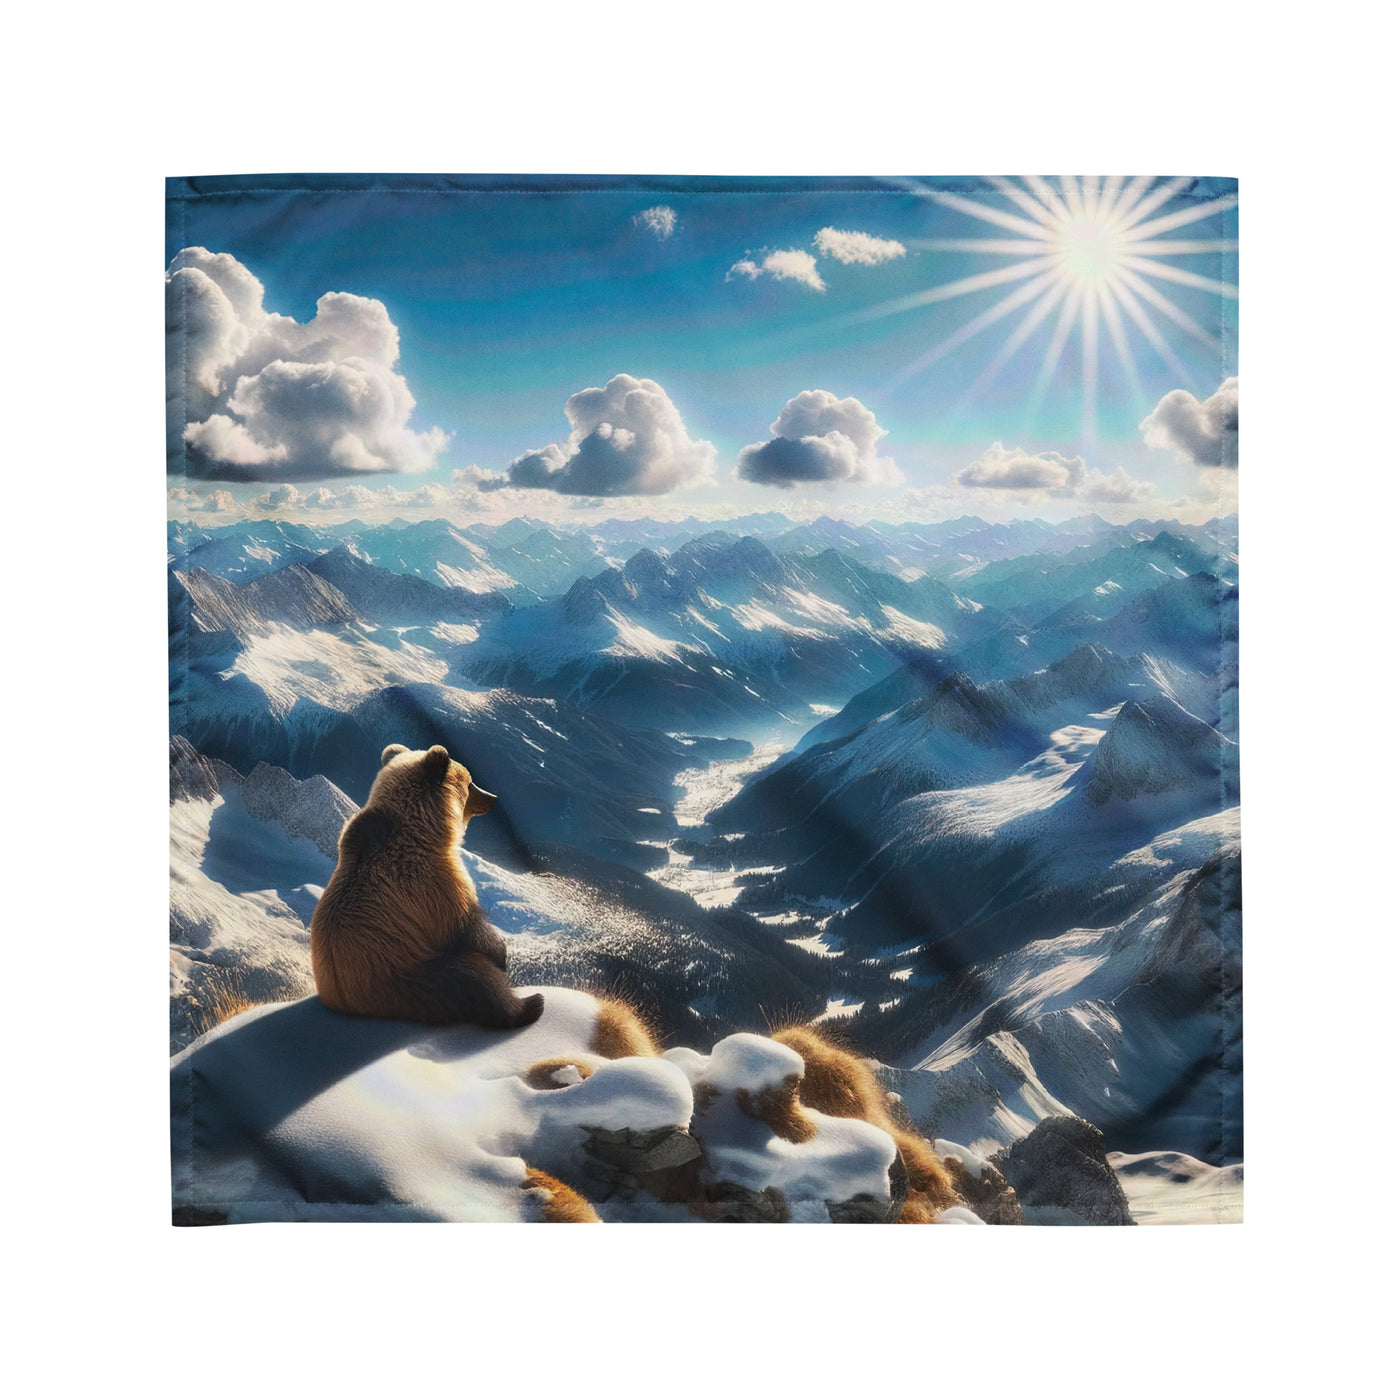 Foto der Alpen im Winter mit Bären auf dem Gipfel, glitzernder Neuschnee unter der Sonne - Bandana (All-Over Print) camping xxx yyy zzz M